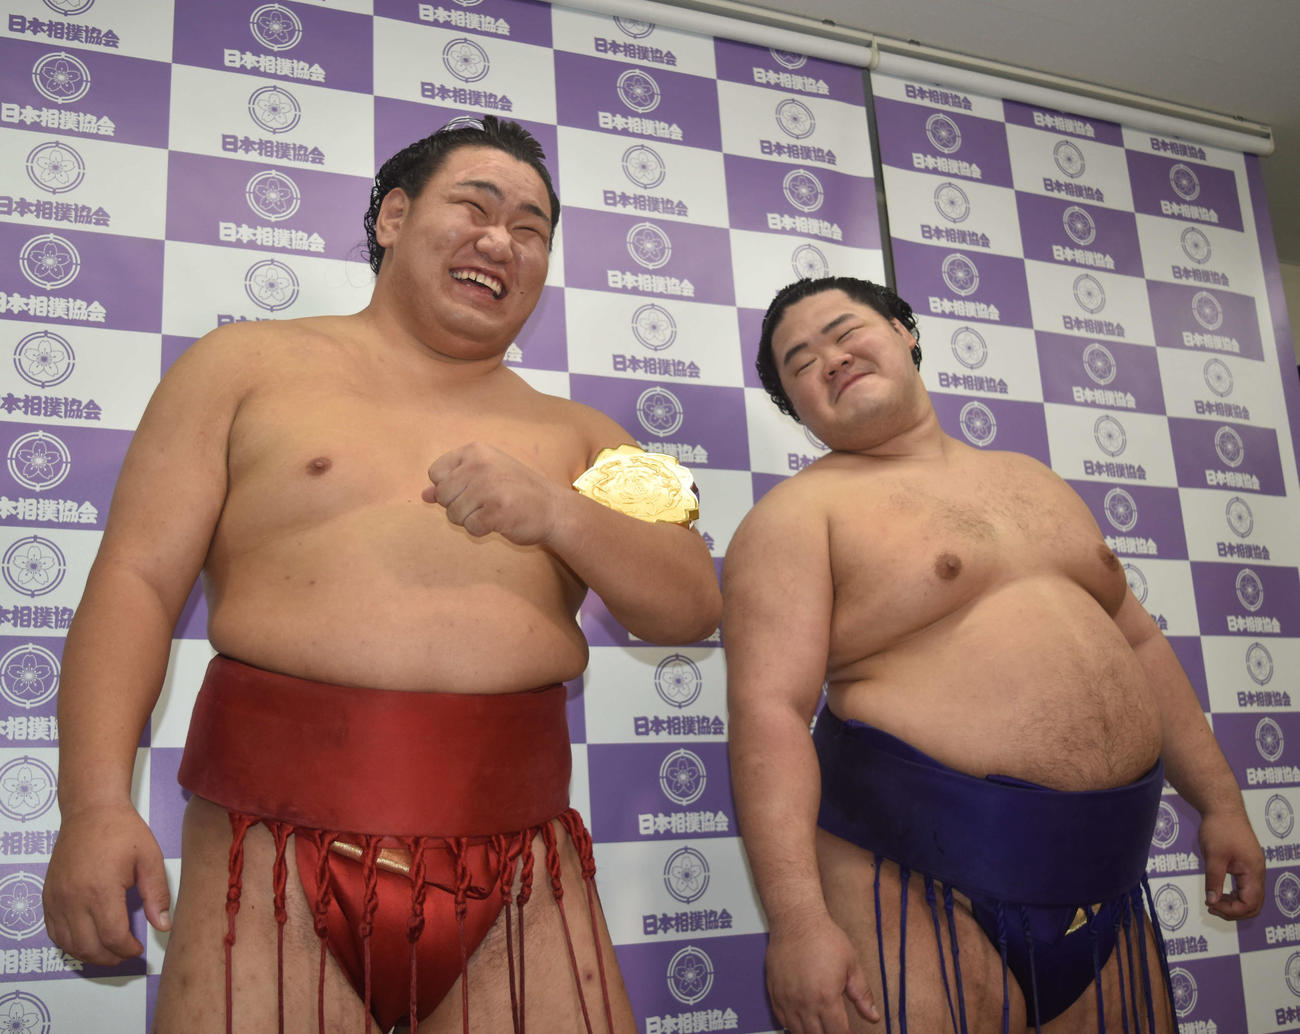 全日本力士選士権で初優勝して選士権章を腕に巻いて笑顔を見せる豊昇龍。右はうらやましそうに見る明生